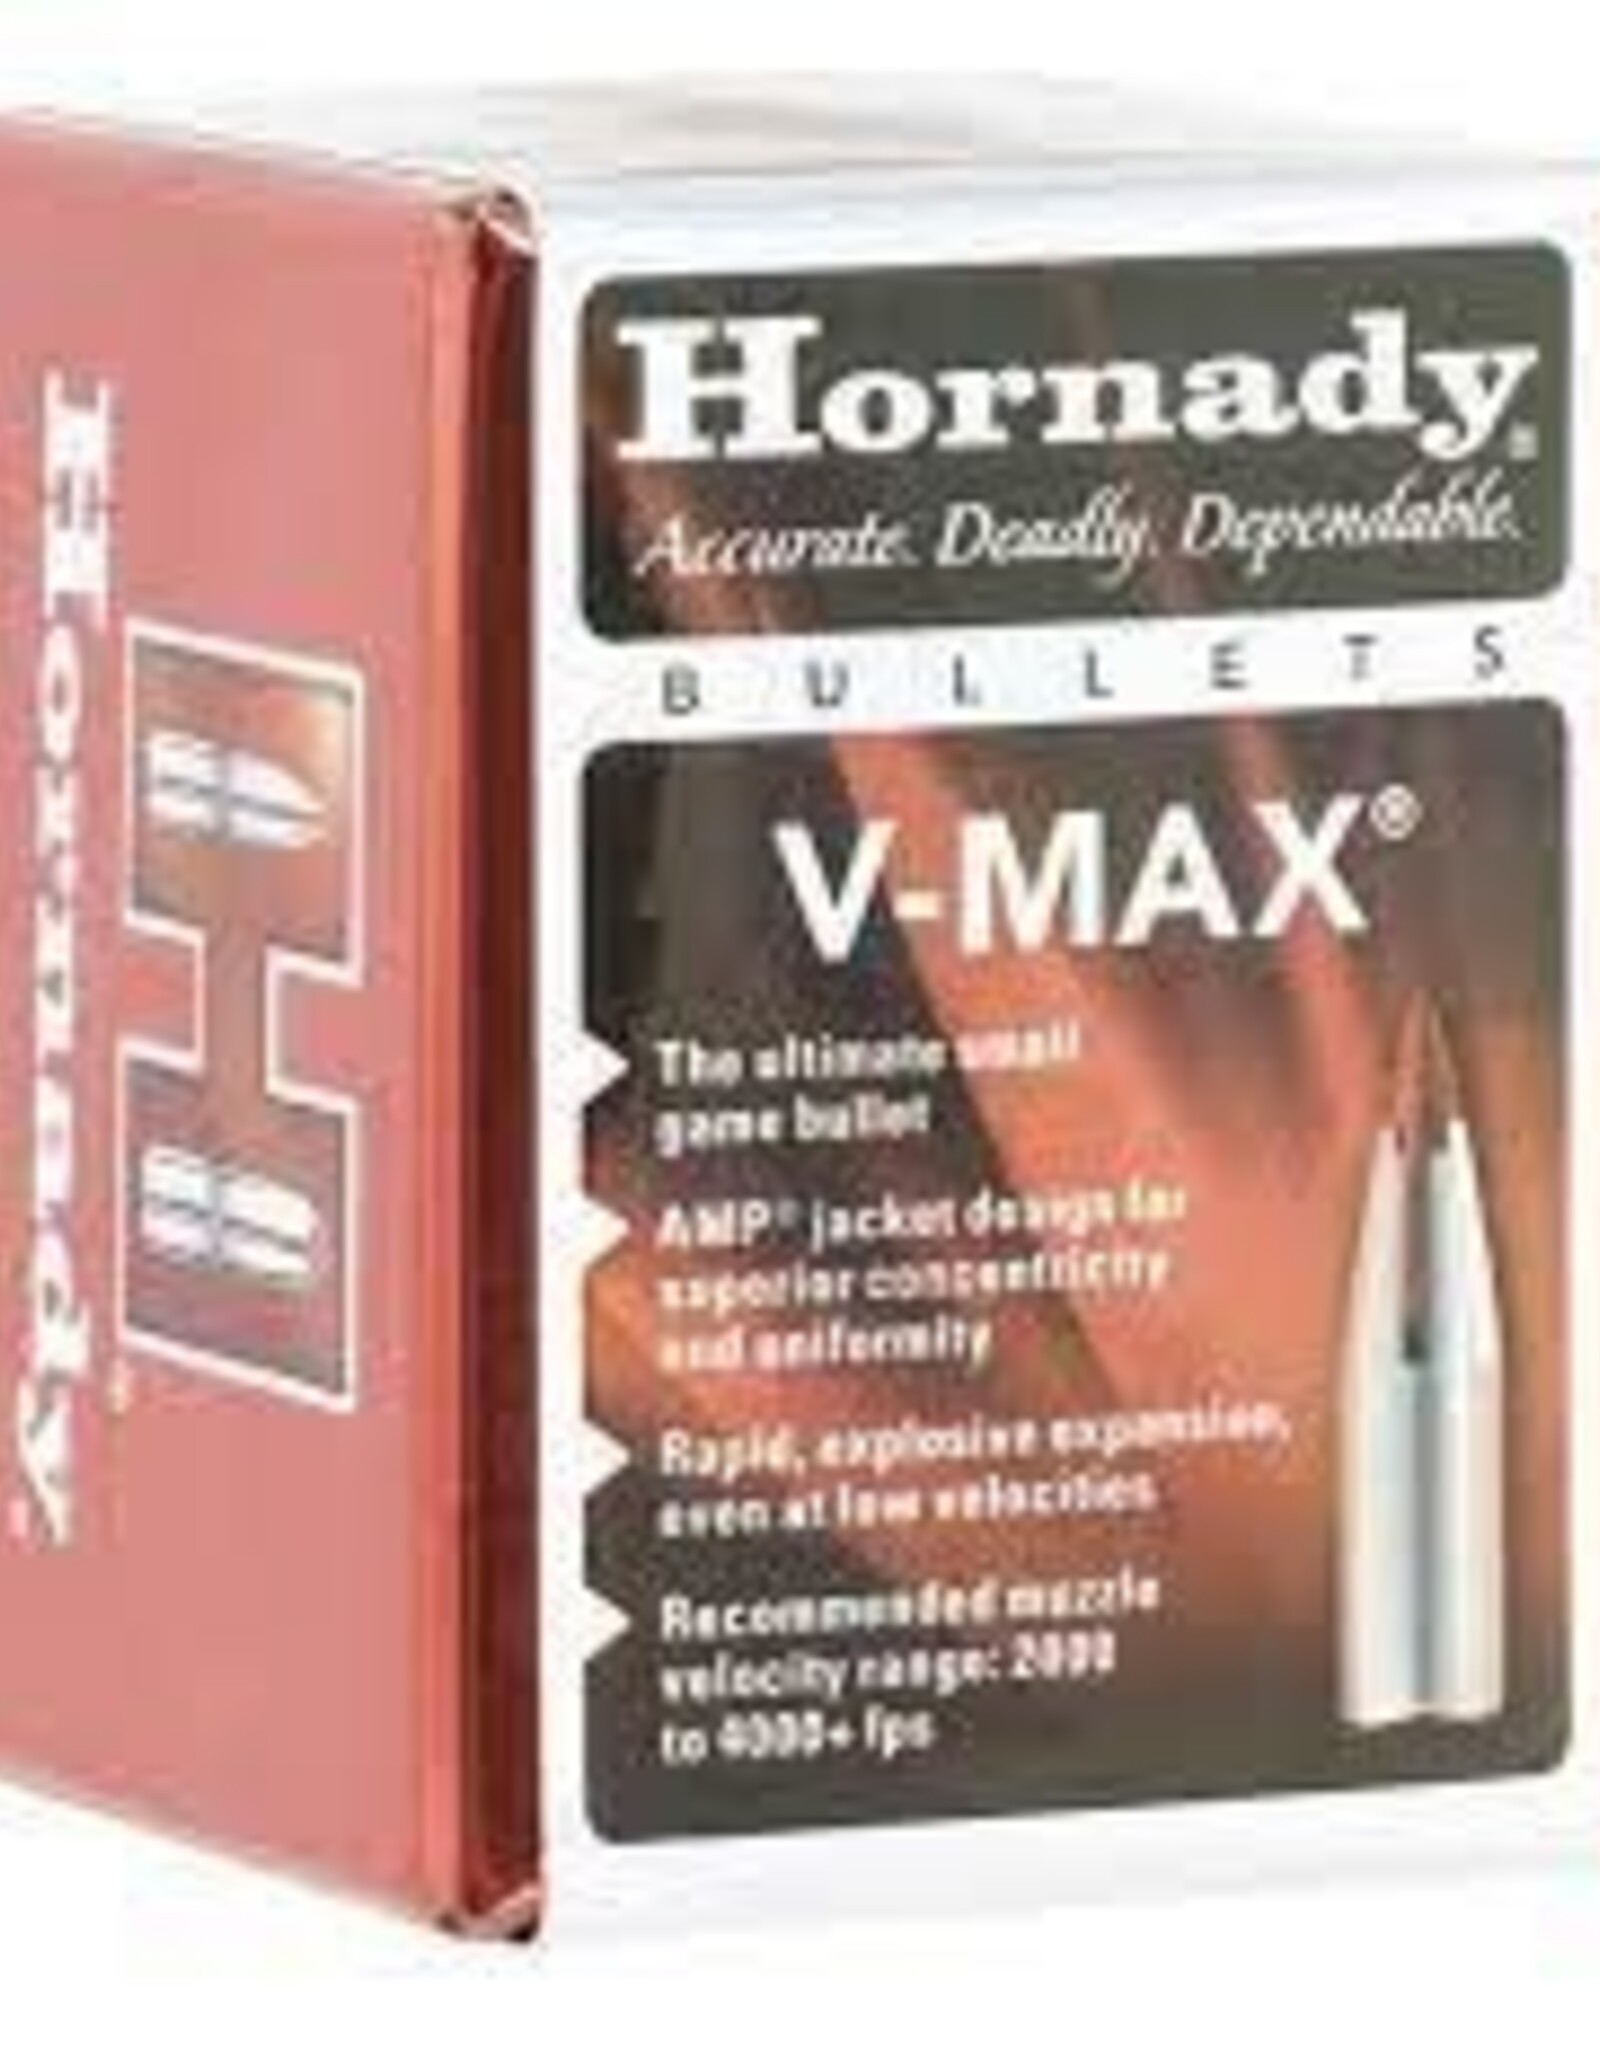 HORNADY V-Max Bullets Qty:100